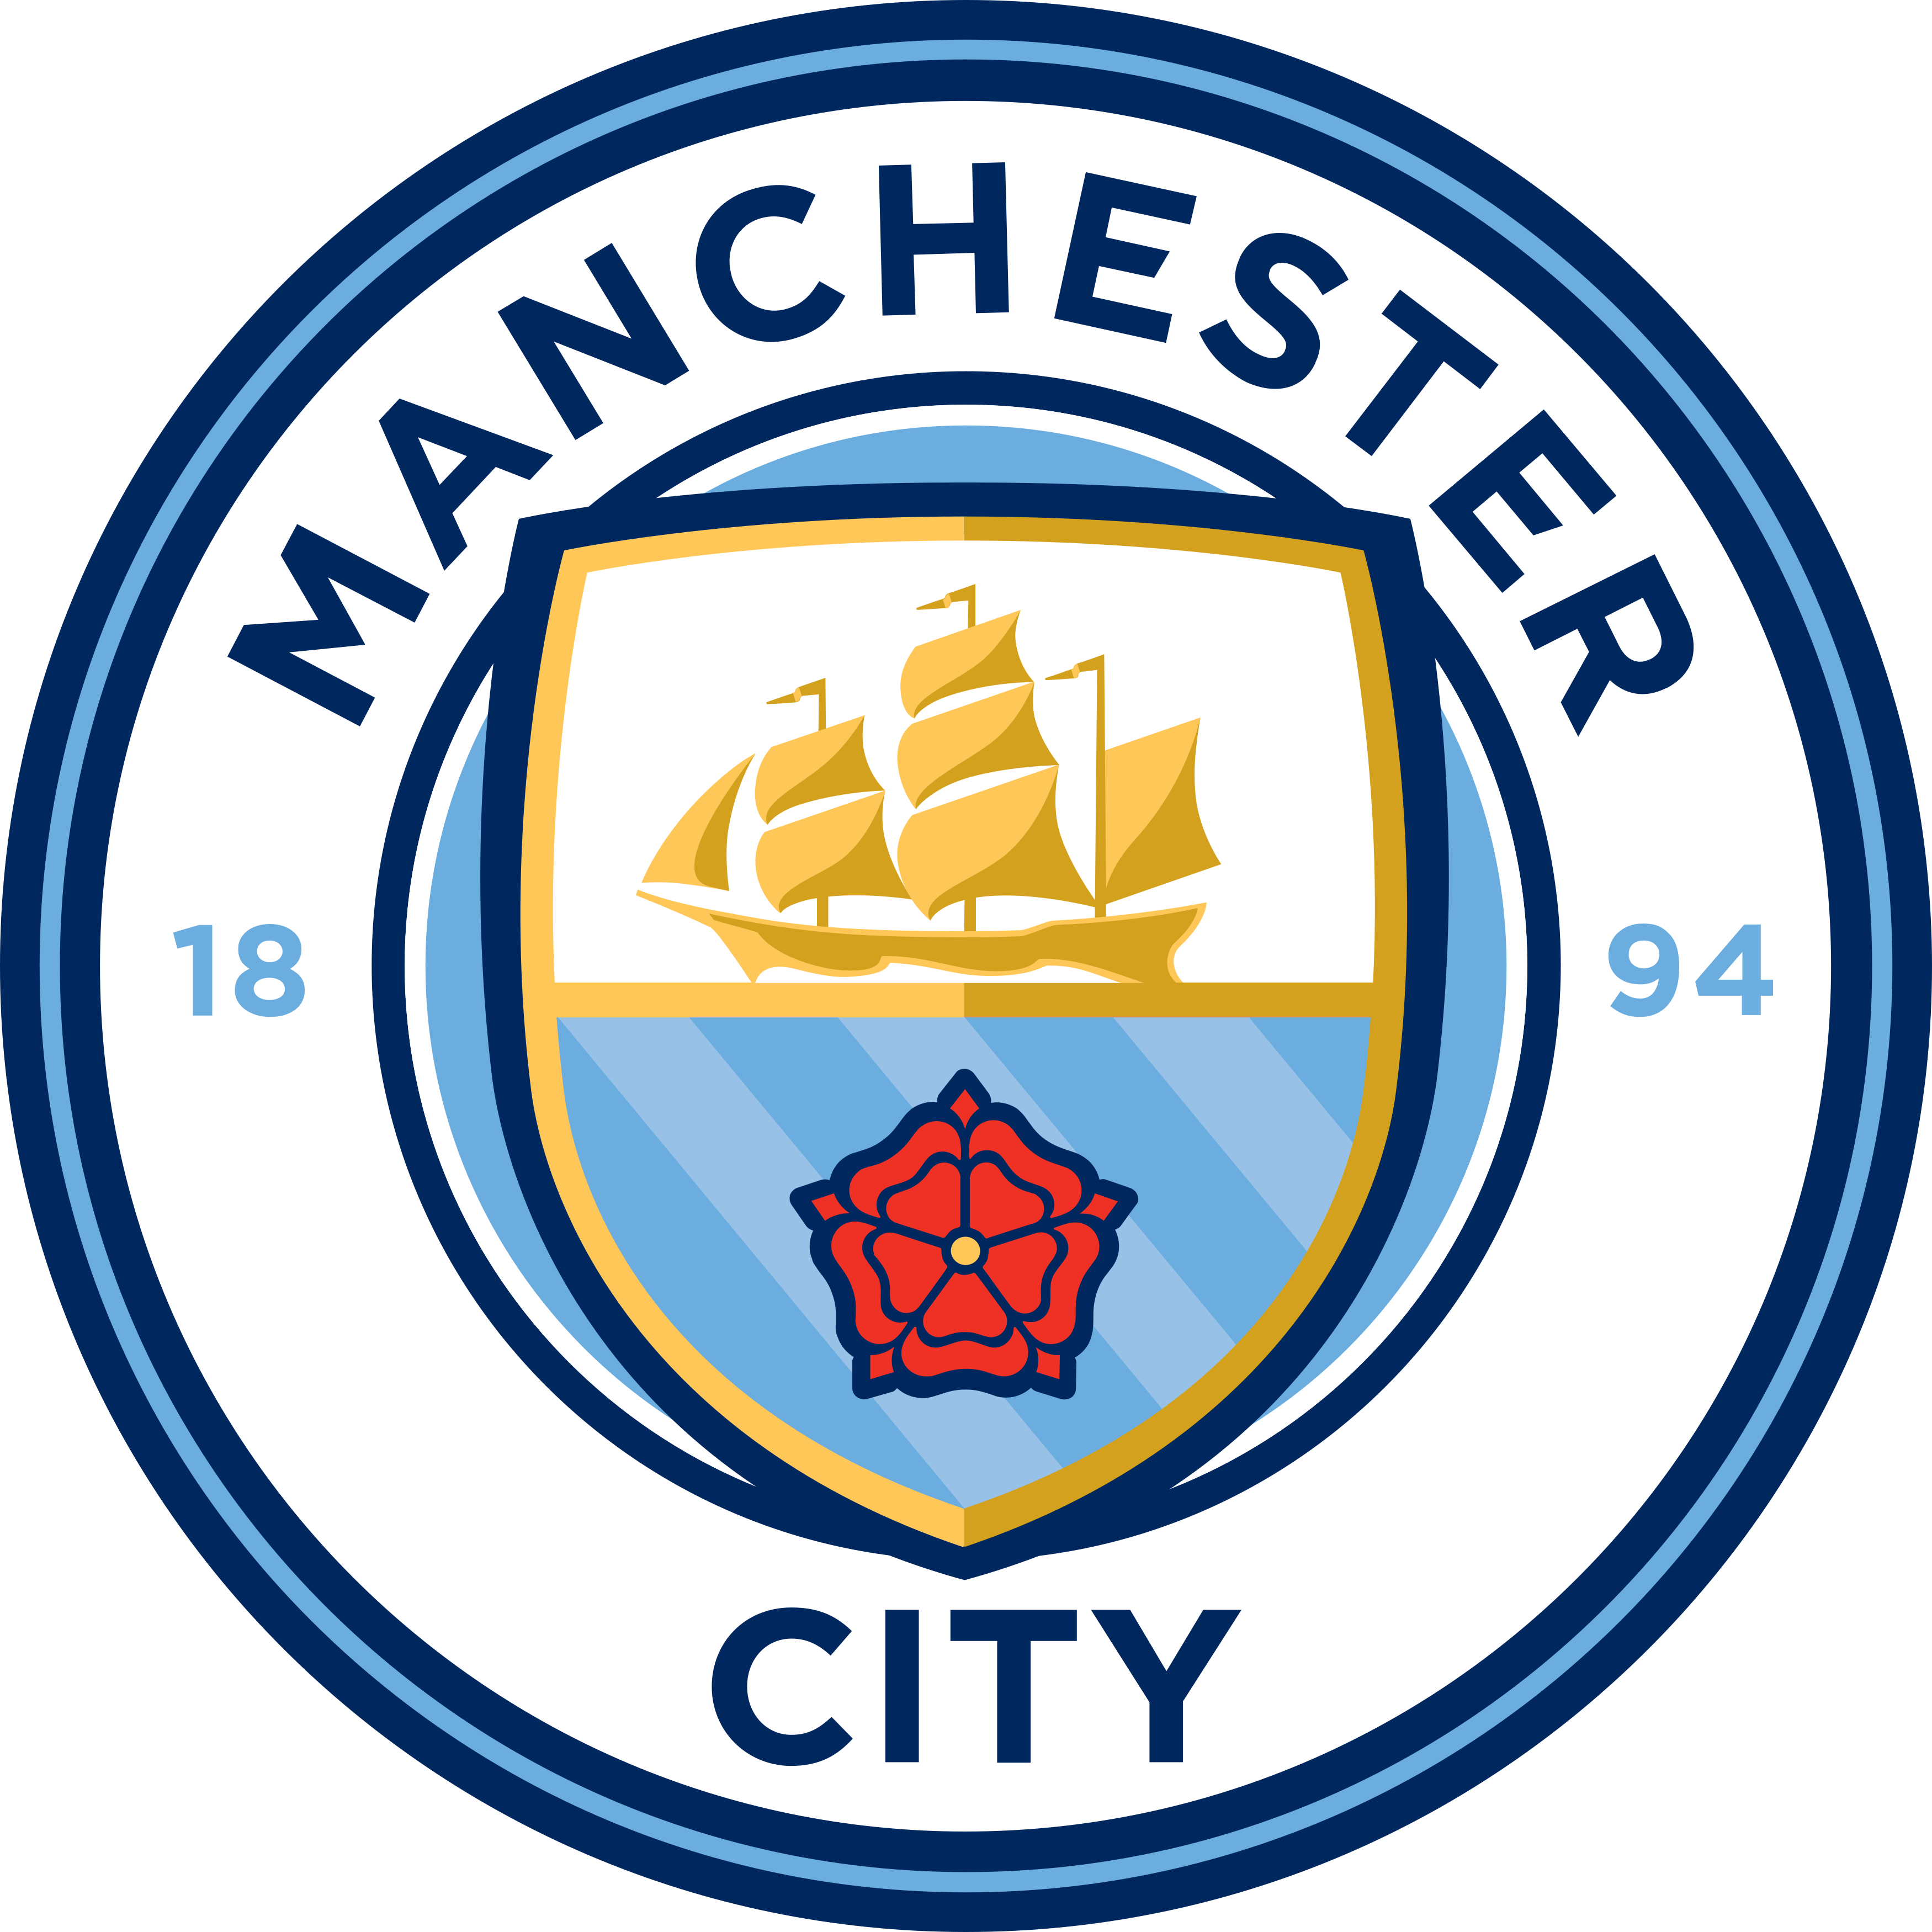 Manchester City logo, escudo, badge.